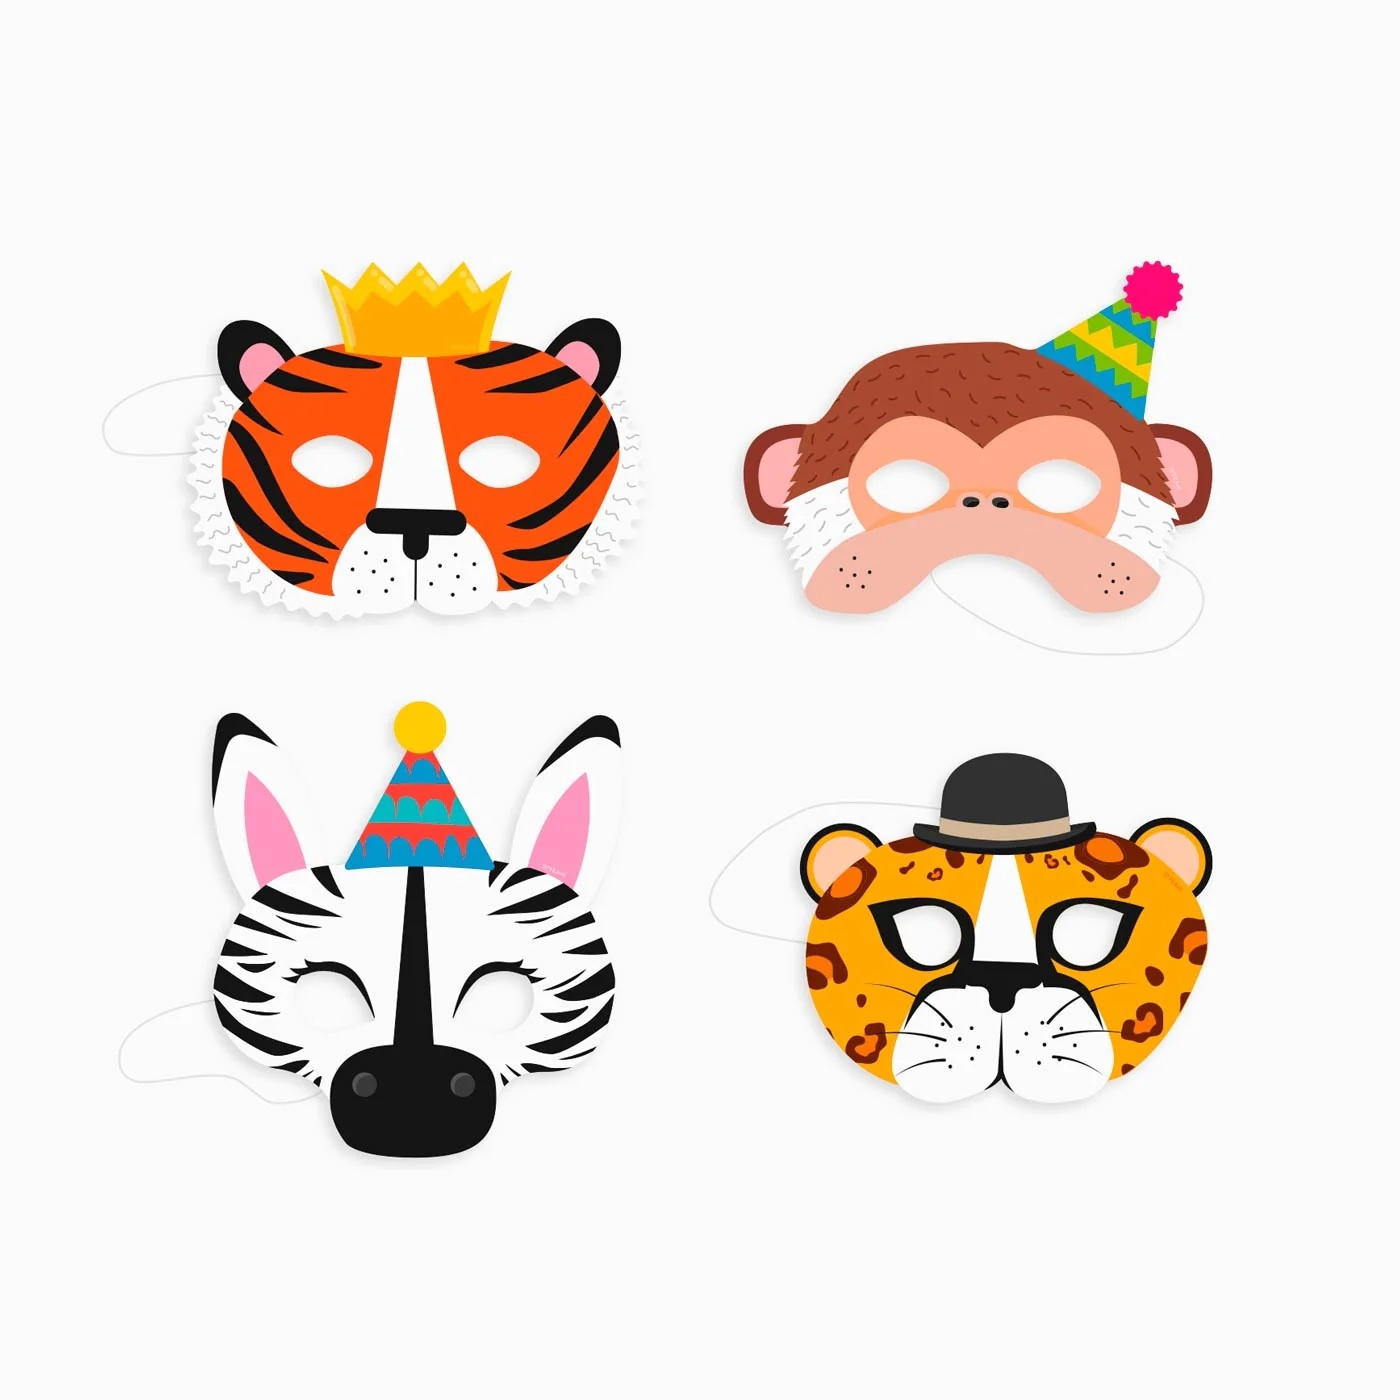 Máscaras de animales para imprimir - Gratis, cumpleaños, – Una